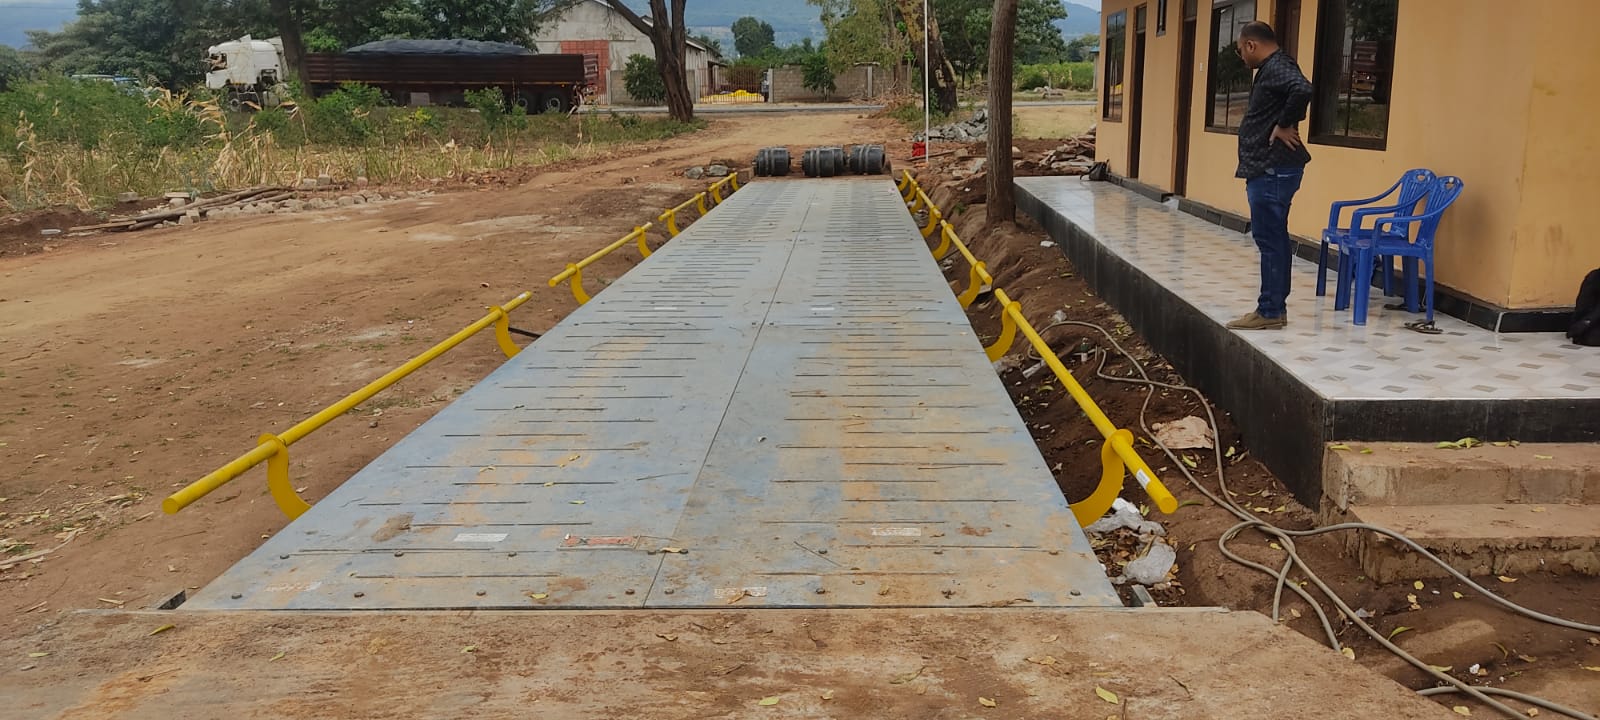 Weighbridge Installation in Babati, Tanzania | Ufungaji wa Mizani